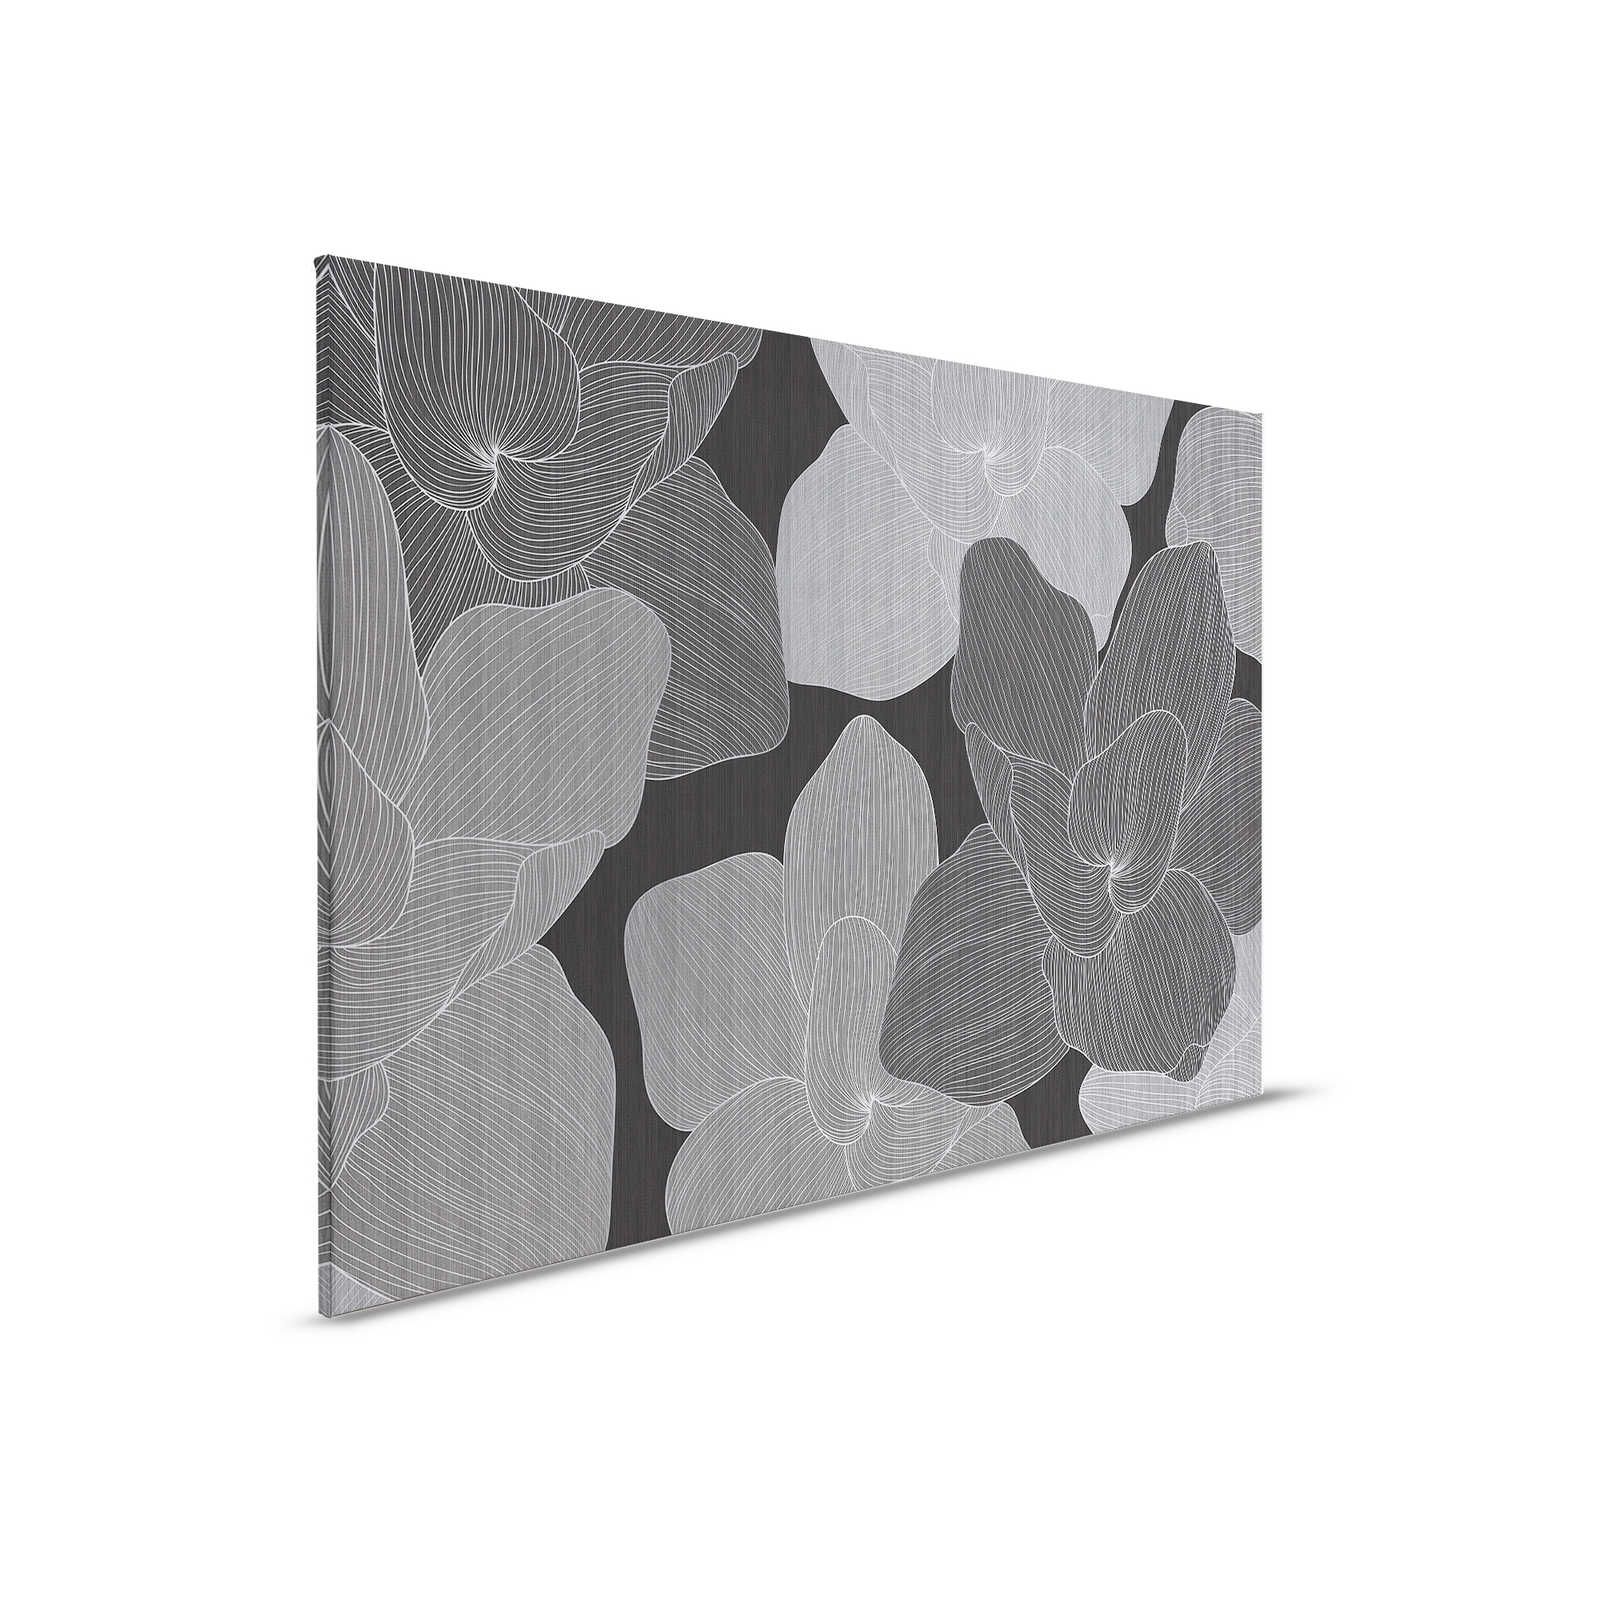 Secret Place 1 - Quadro su tela monocromatica Fiori, nero e grigio - 0,90 m x 0,60 m
